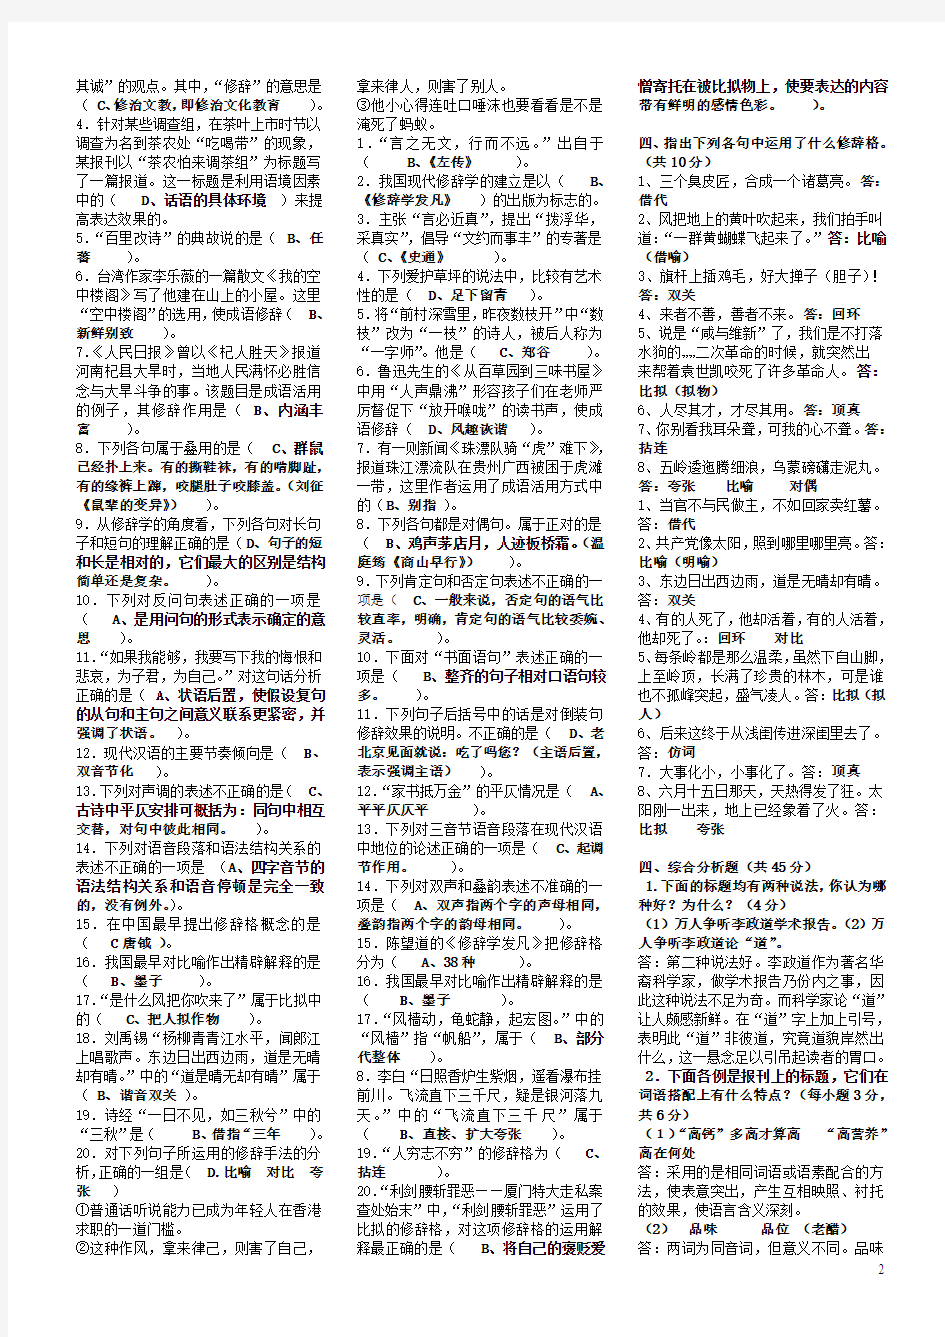 2018年电大汉语修辞学期末考试资料附全部答案